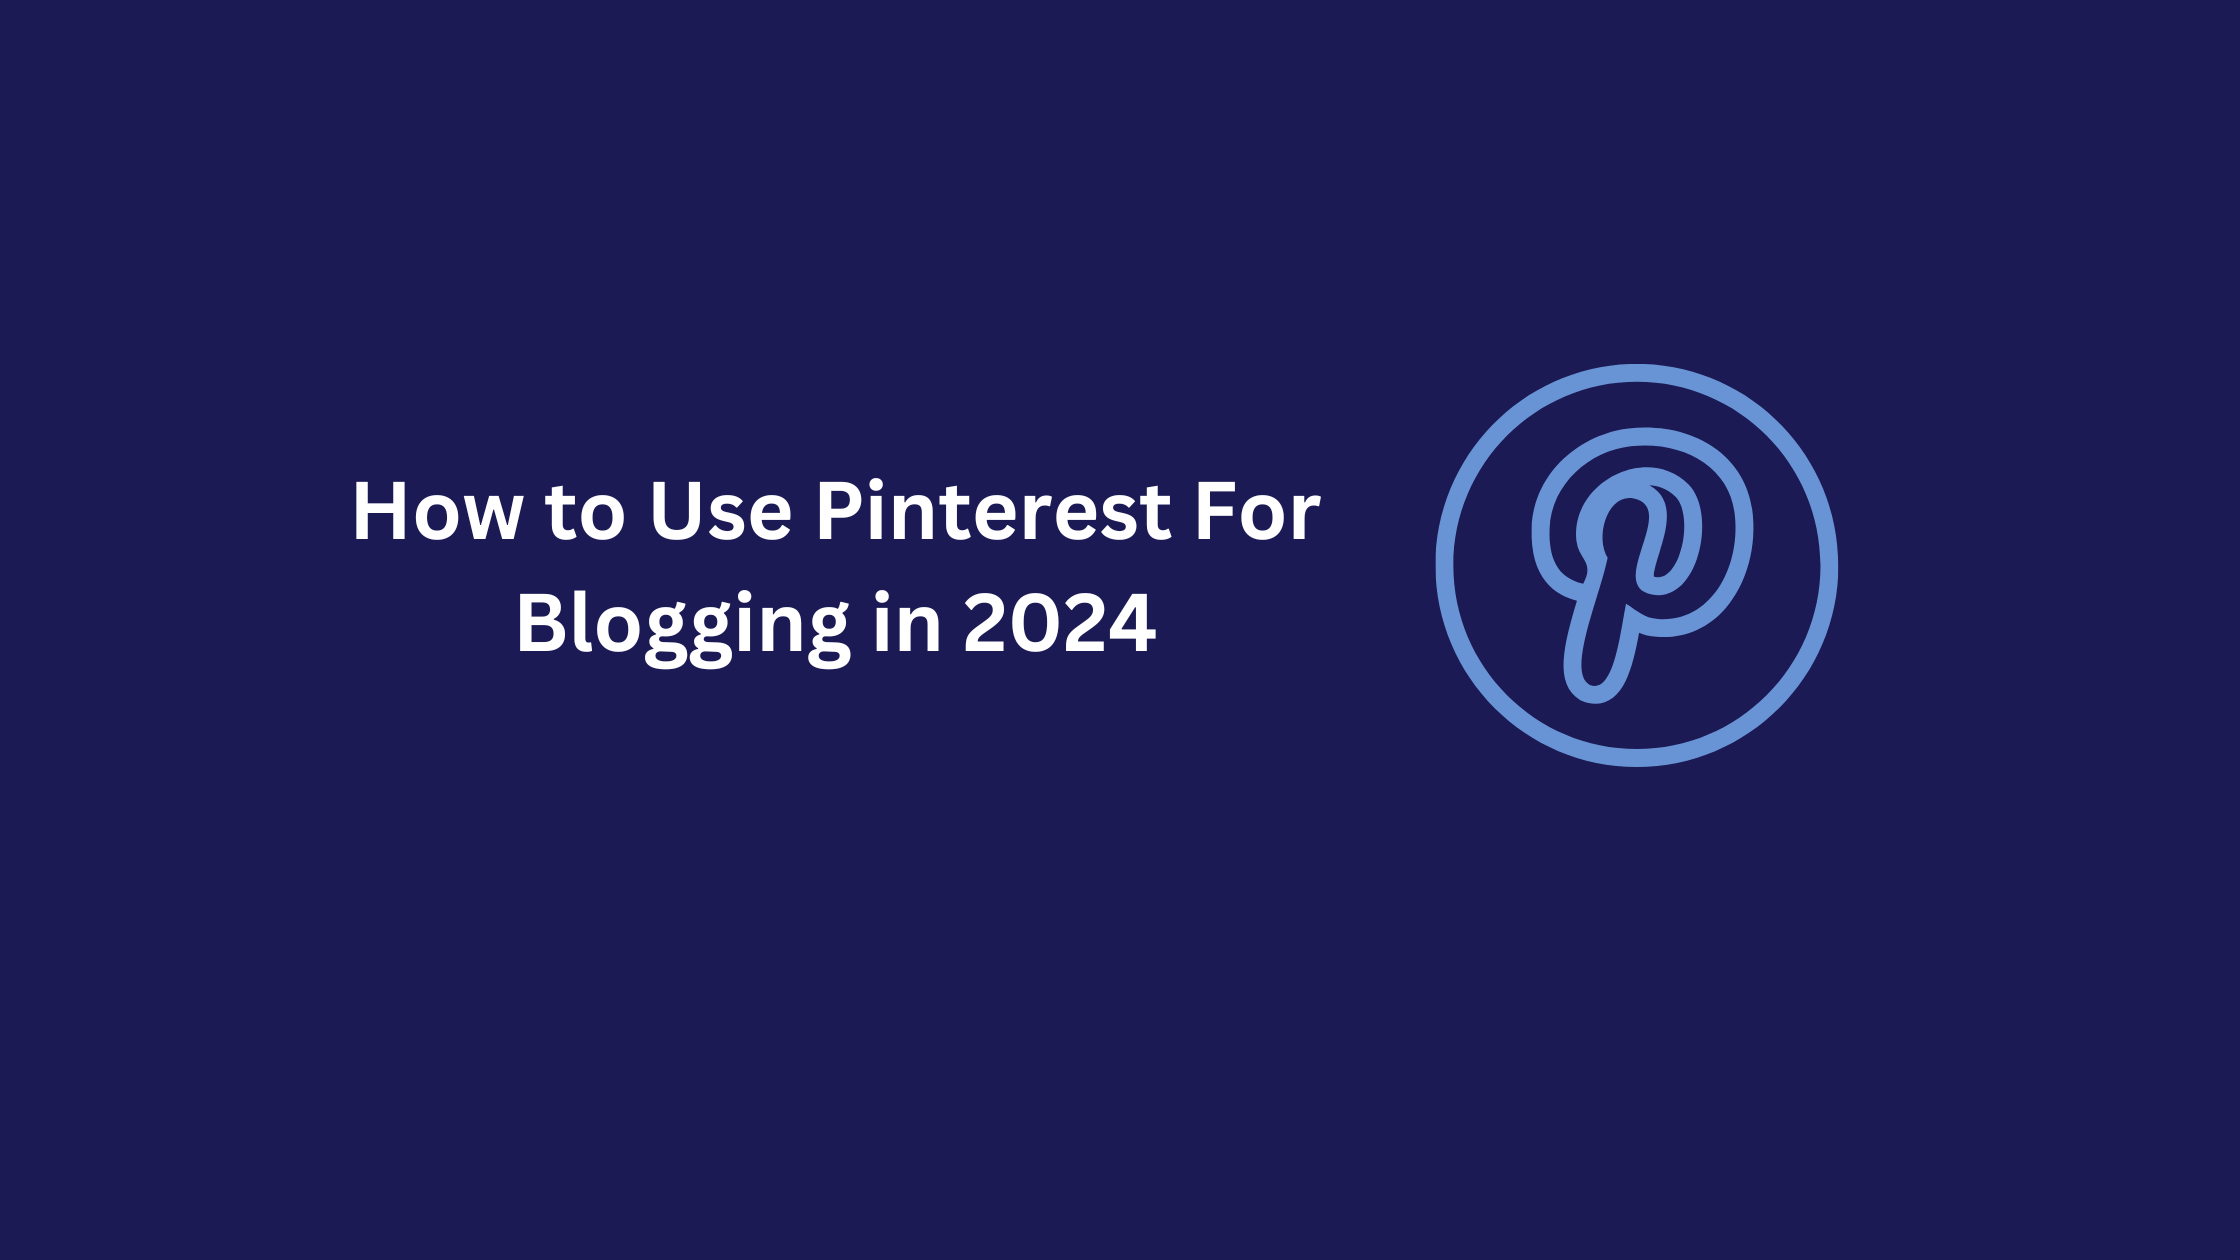 Pinterest for blogging